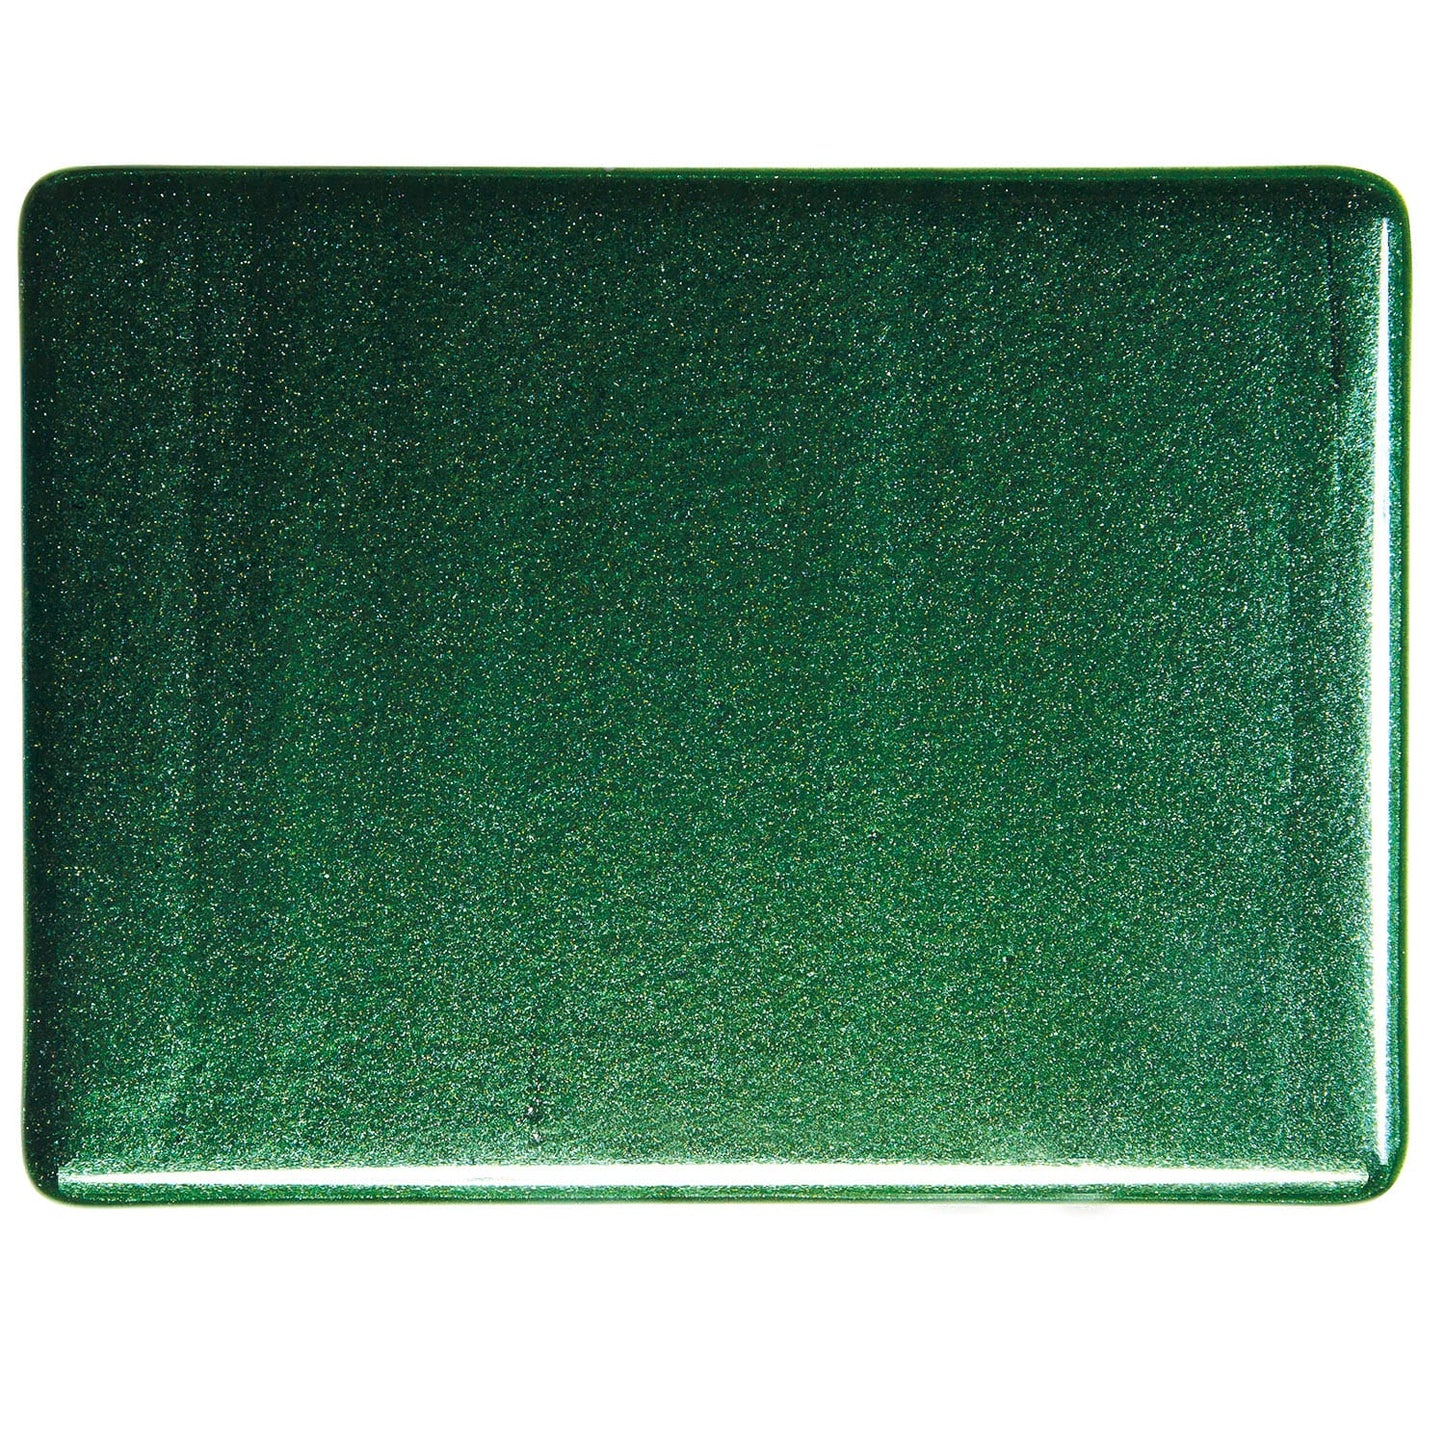 Bullseye COE90 Fusing Glass 001112 Aventurine Green Full Sheet